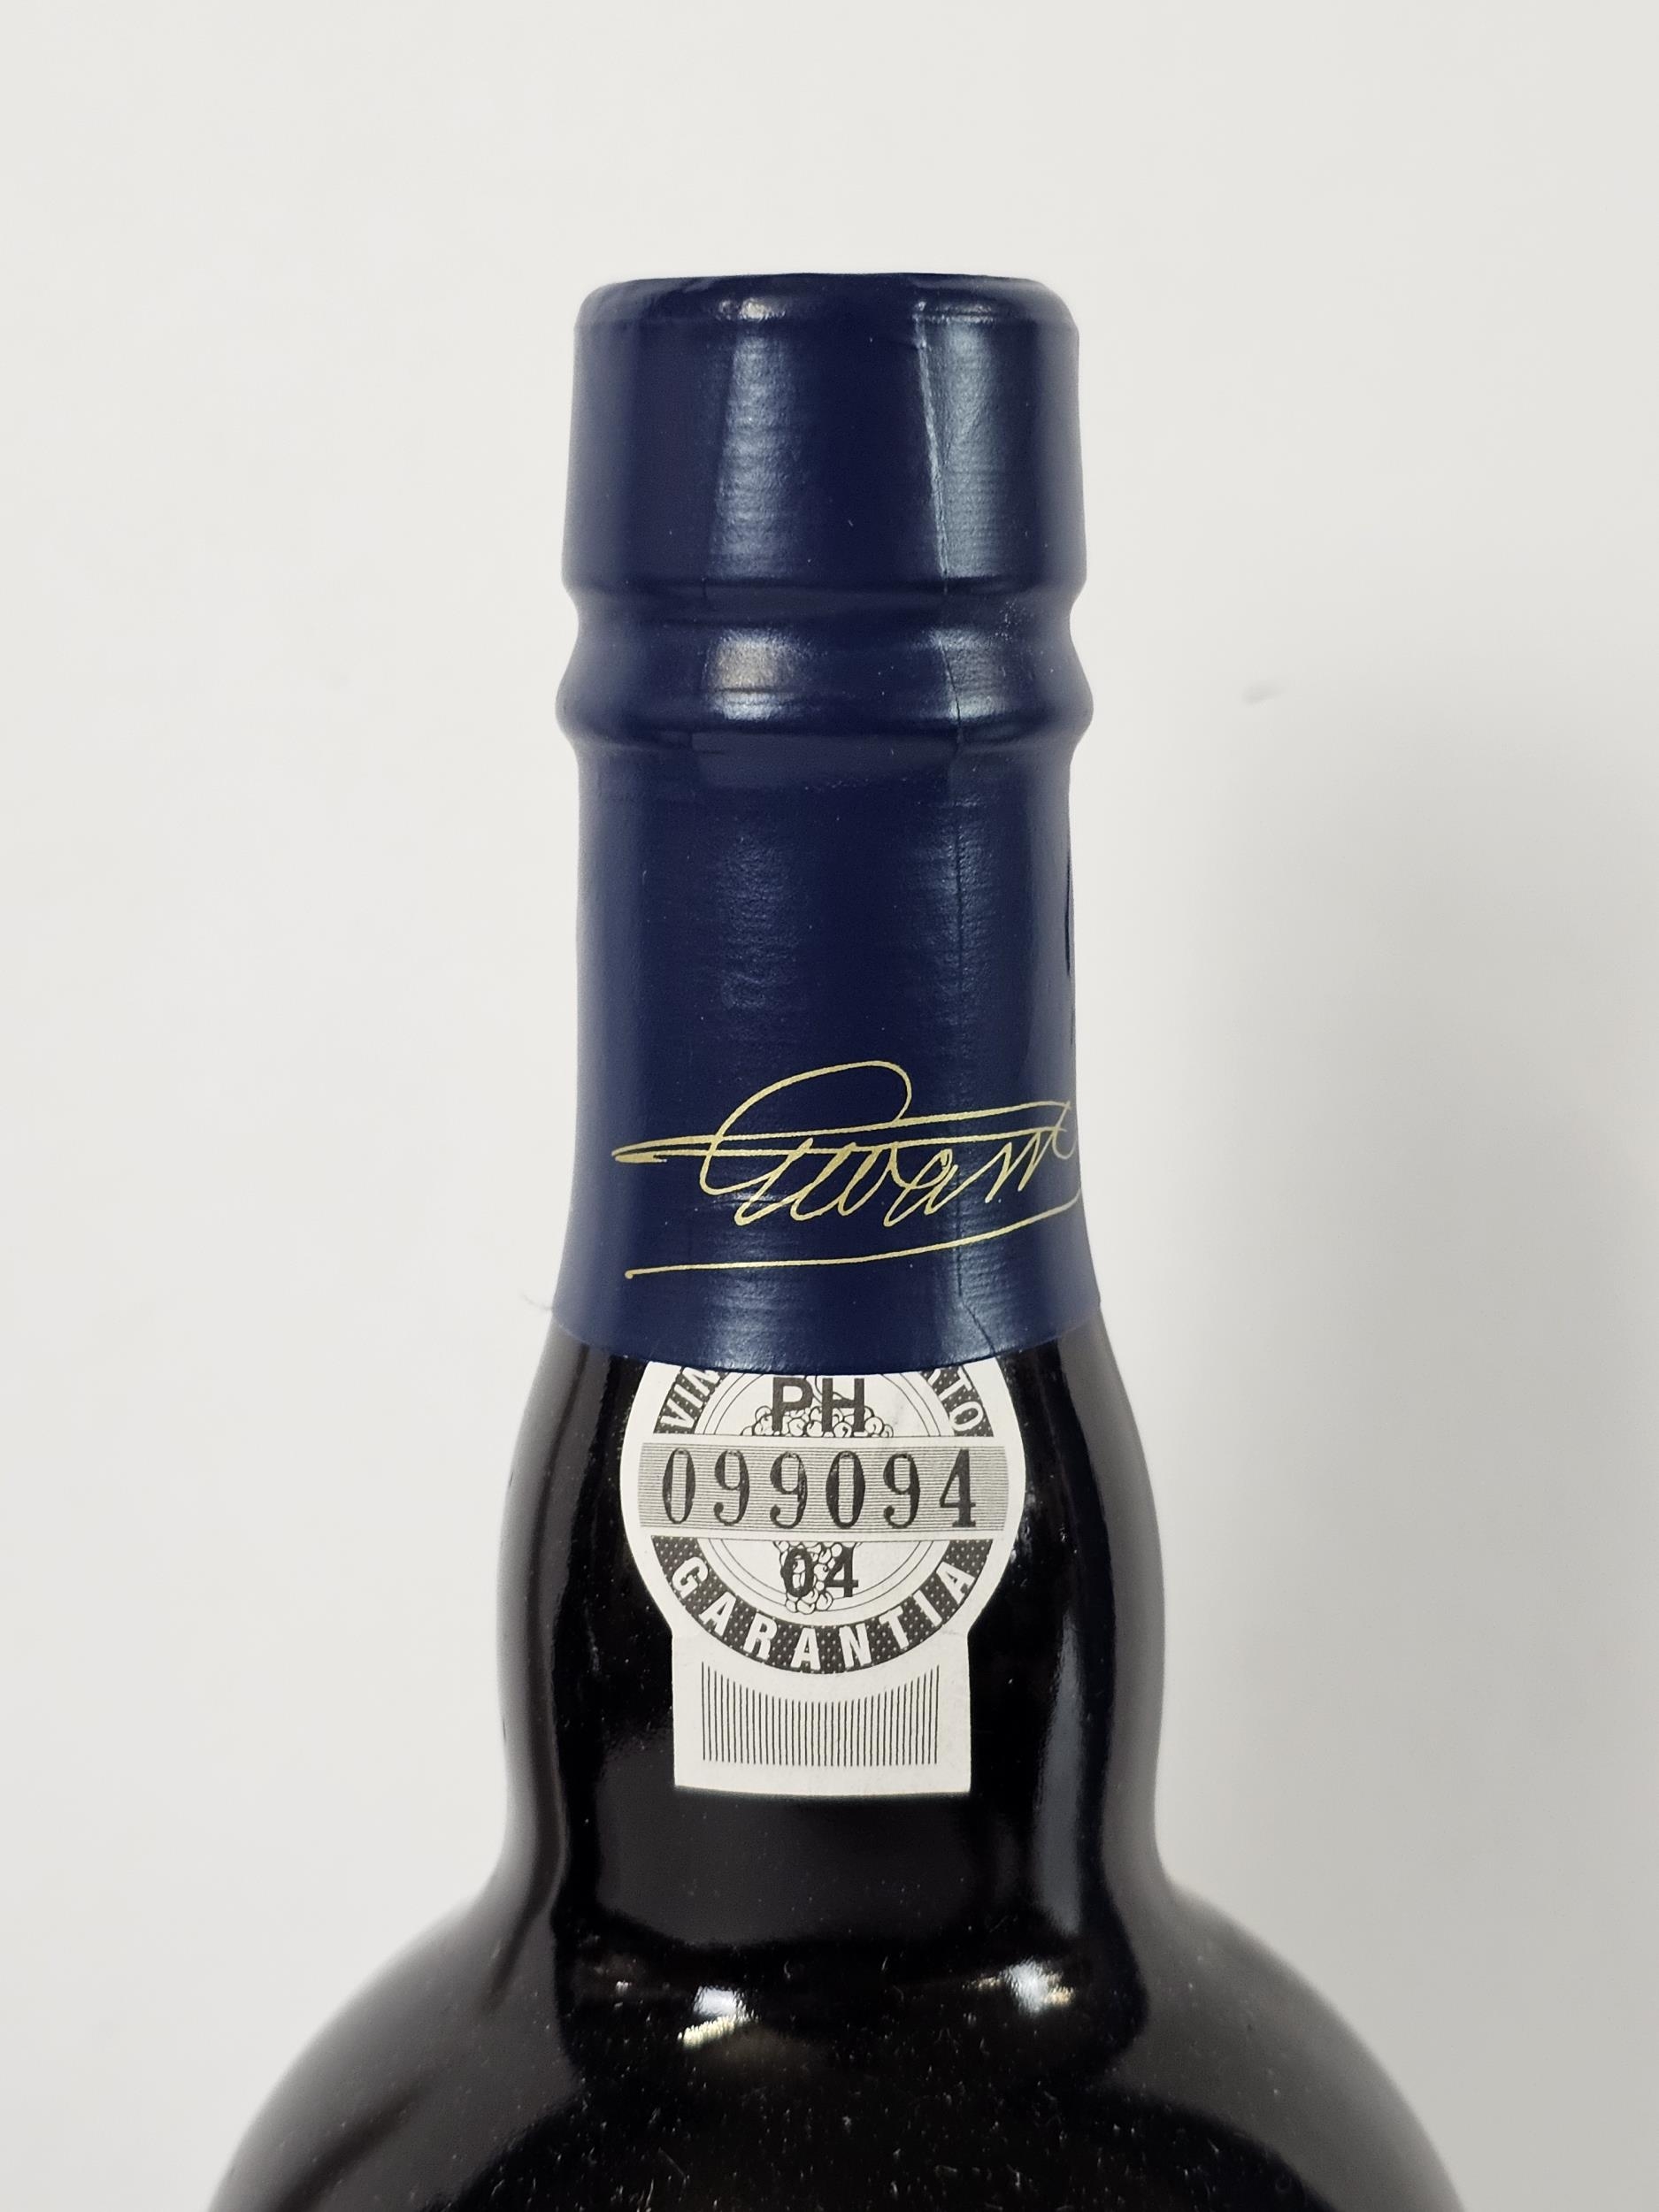 2001 Warre's Late Bottled Vintage Port, Portugal. 2 x 75cl bottles - Image 2 of 5